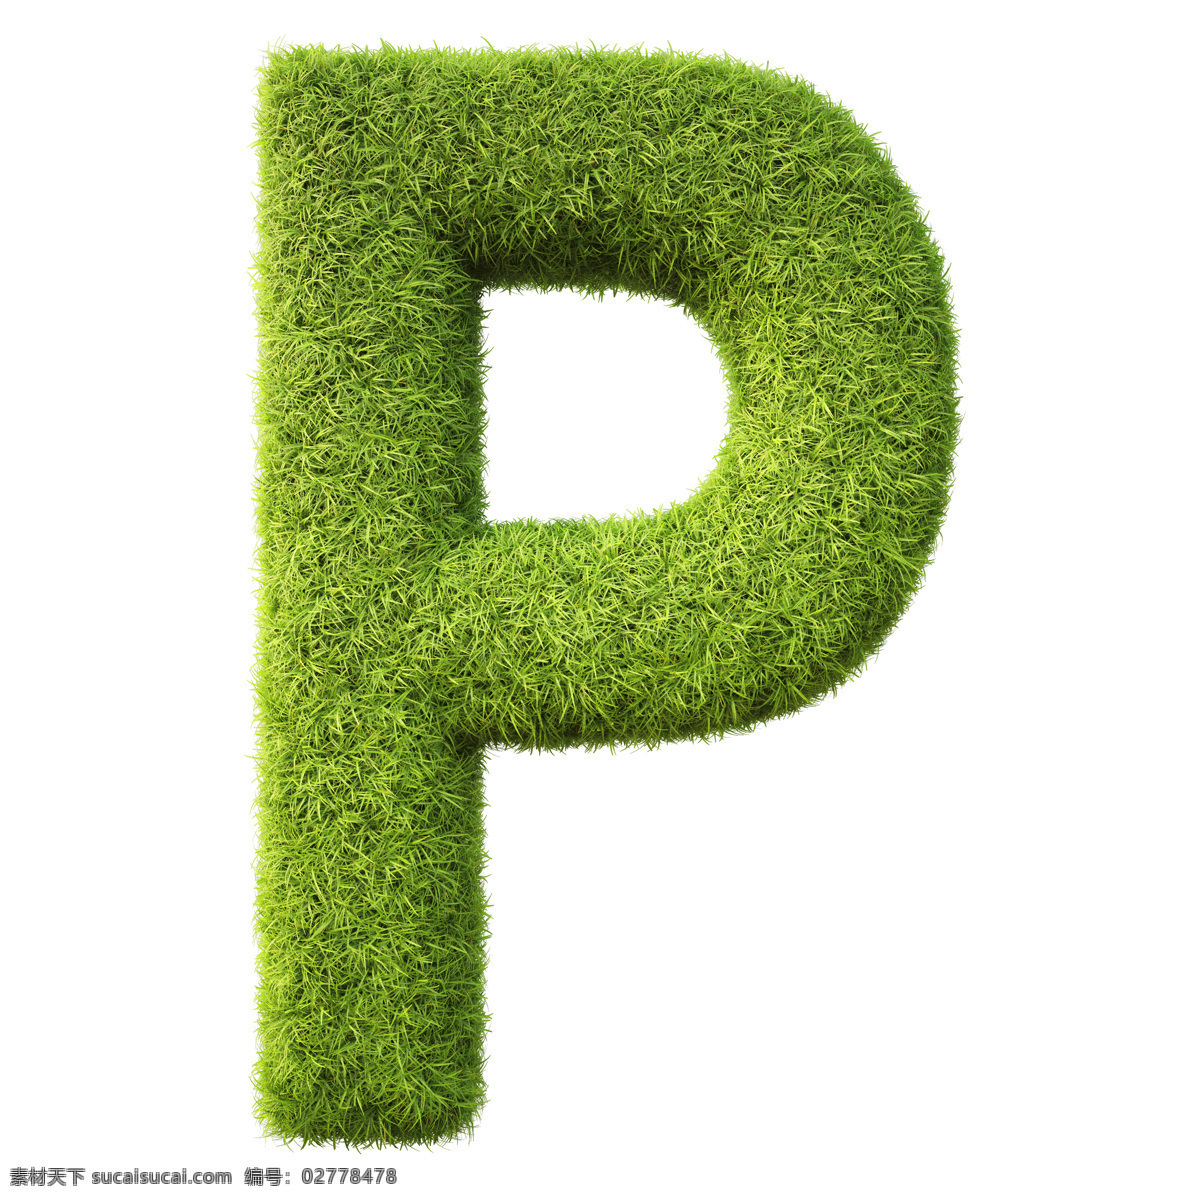 时尚 手绘 装饰 字母 字母设计 绿 草 设计素材 草字 母模 板 绿草字母 3d立体字母 数字主题 矢量图 艺术字